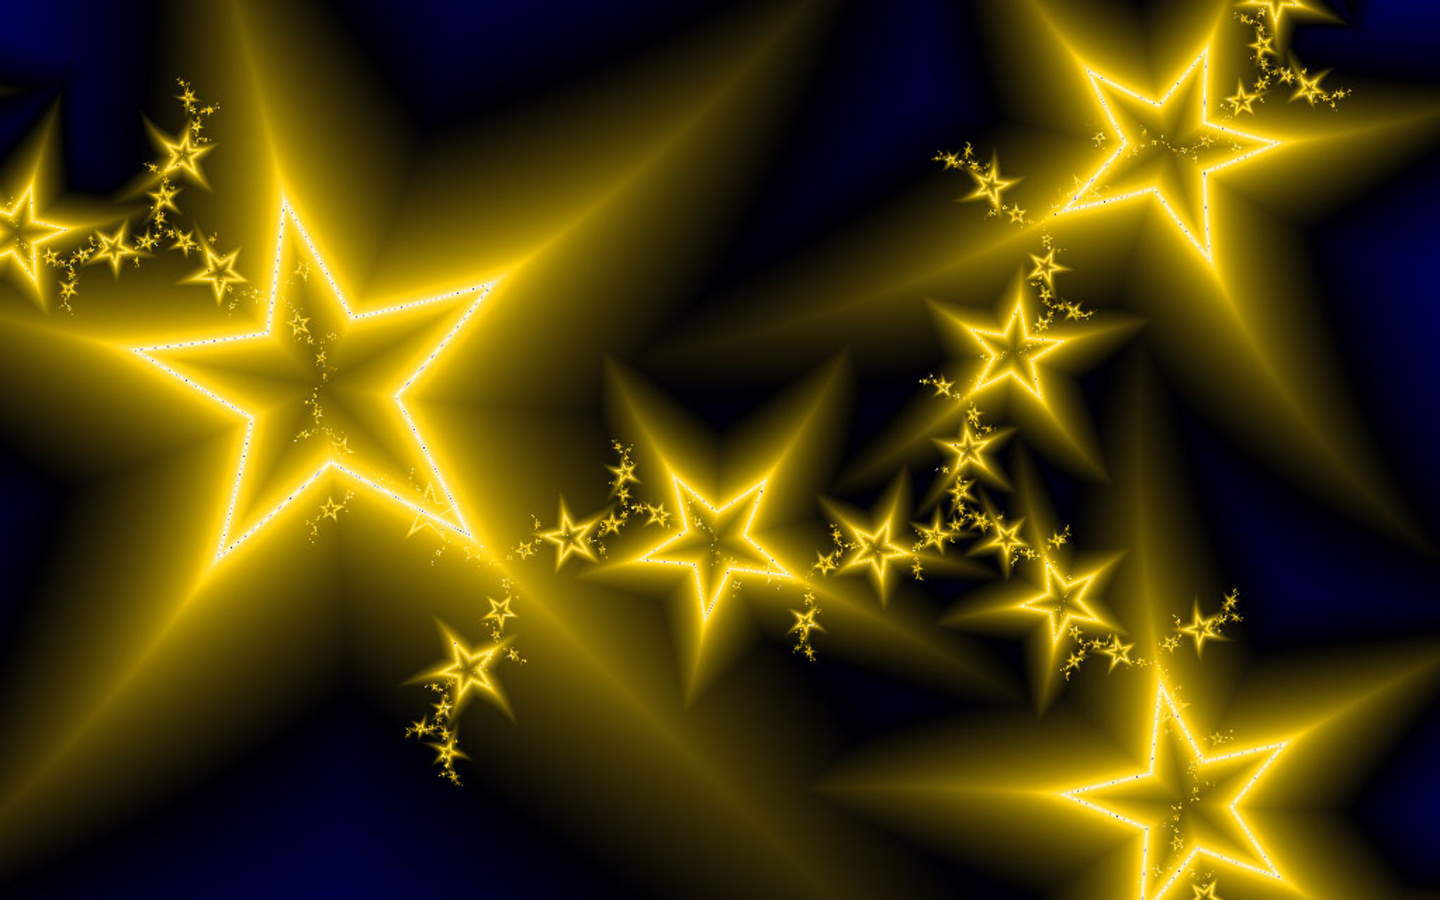 Gold stars on blue background (FullScreen)